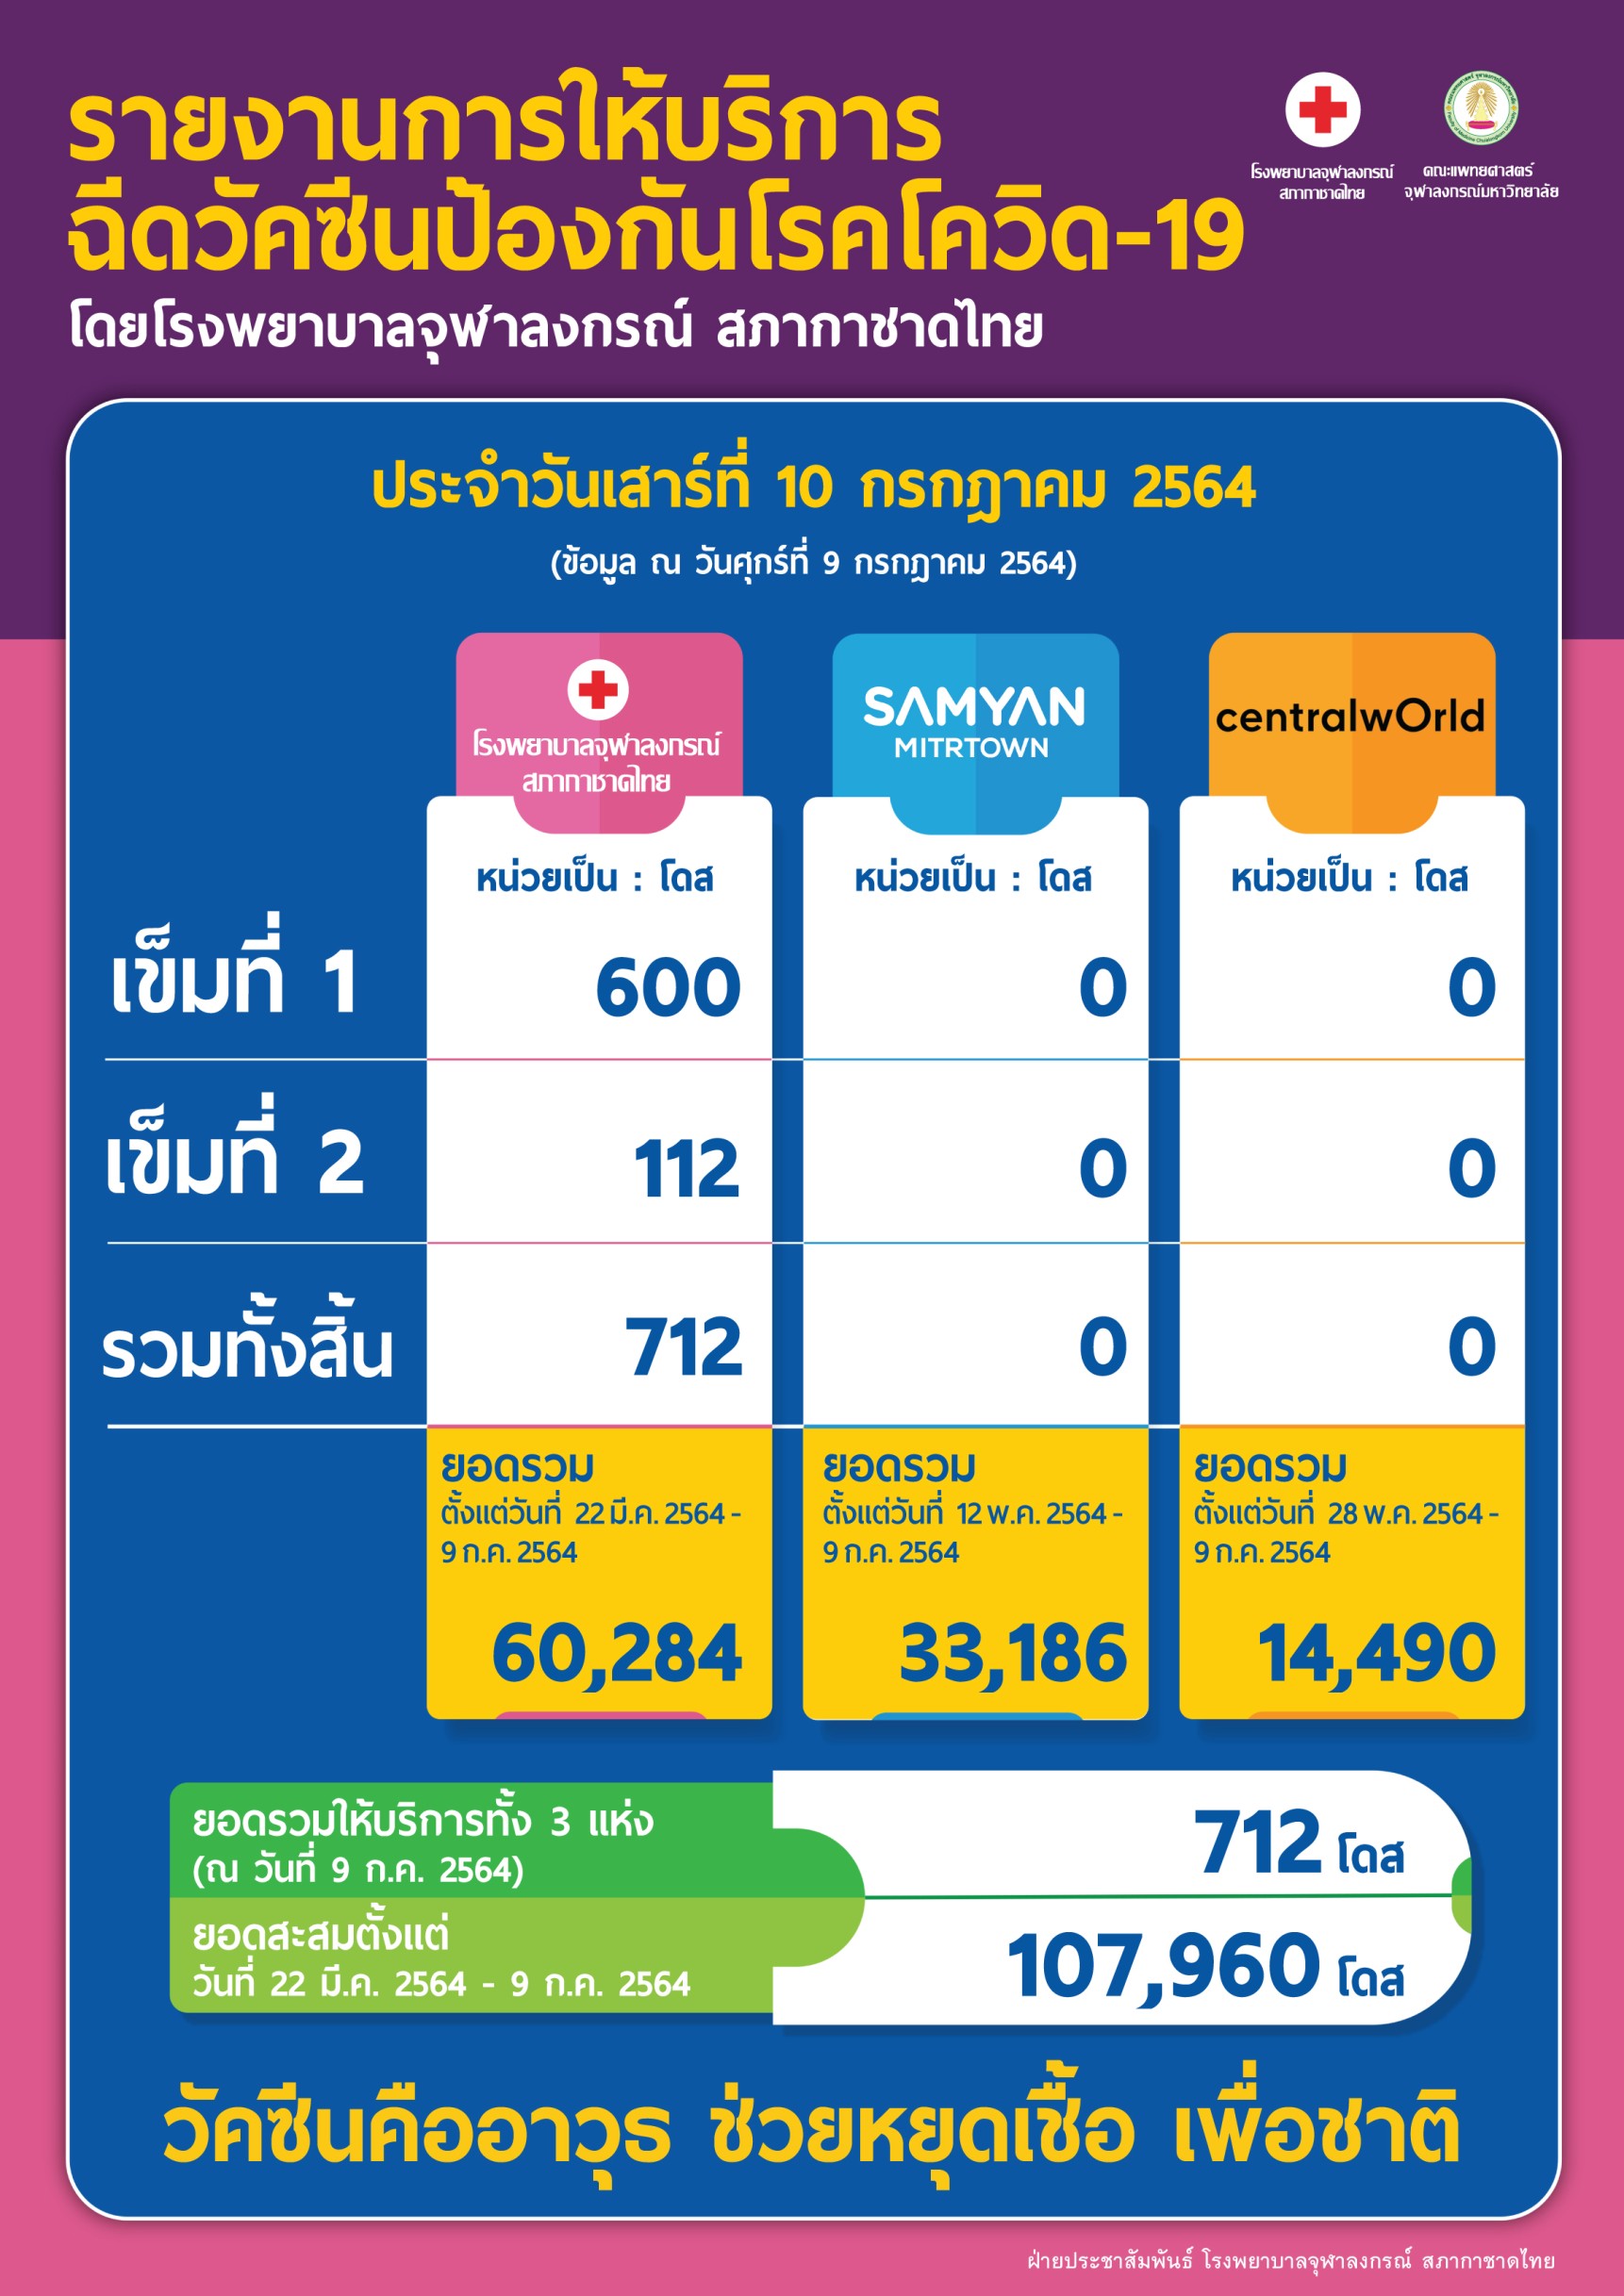 รายงานการให้บริการ ฉีดวัคซีนป้องกันโรคโควิด-19 โดยโรงพยาบาลจุฬาลงกรณ์ สภากาชาดไทย ประจำวันเสาร์ที่ 10 กรกฎาคม 2564